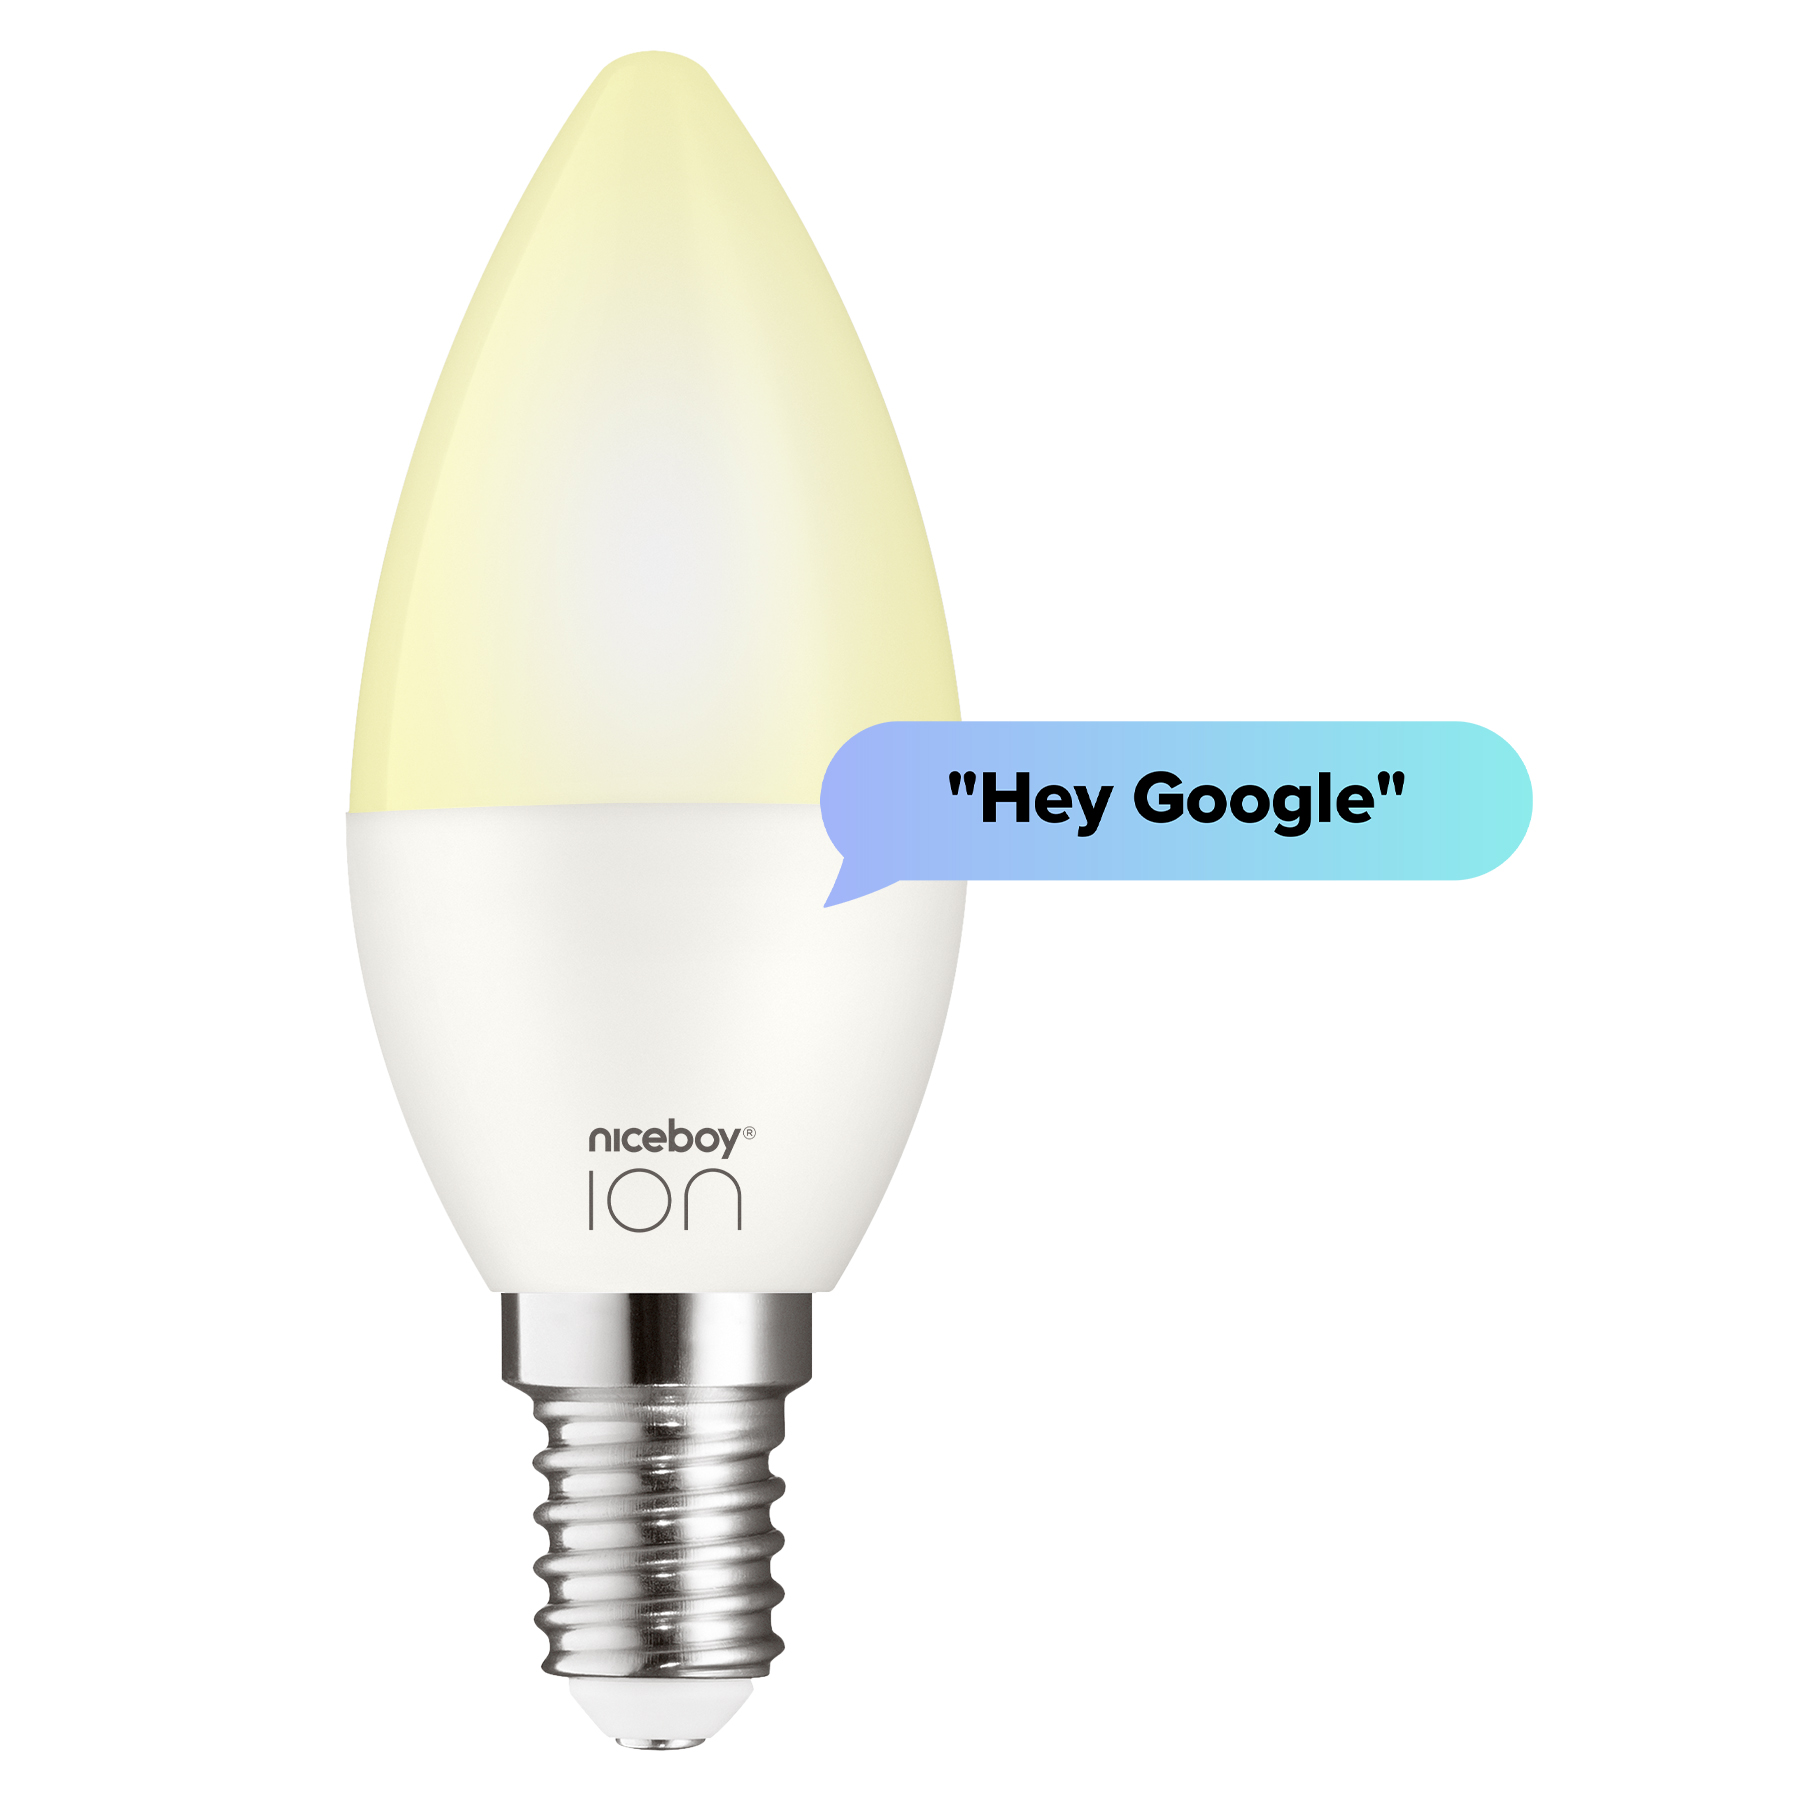 K inteligentnej správe žiarovky Niceboy ION SmartBulb RGB môžete využiť aj hlasového asistenta Google Assistant, takže vás bude počúvať na slovo.